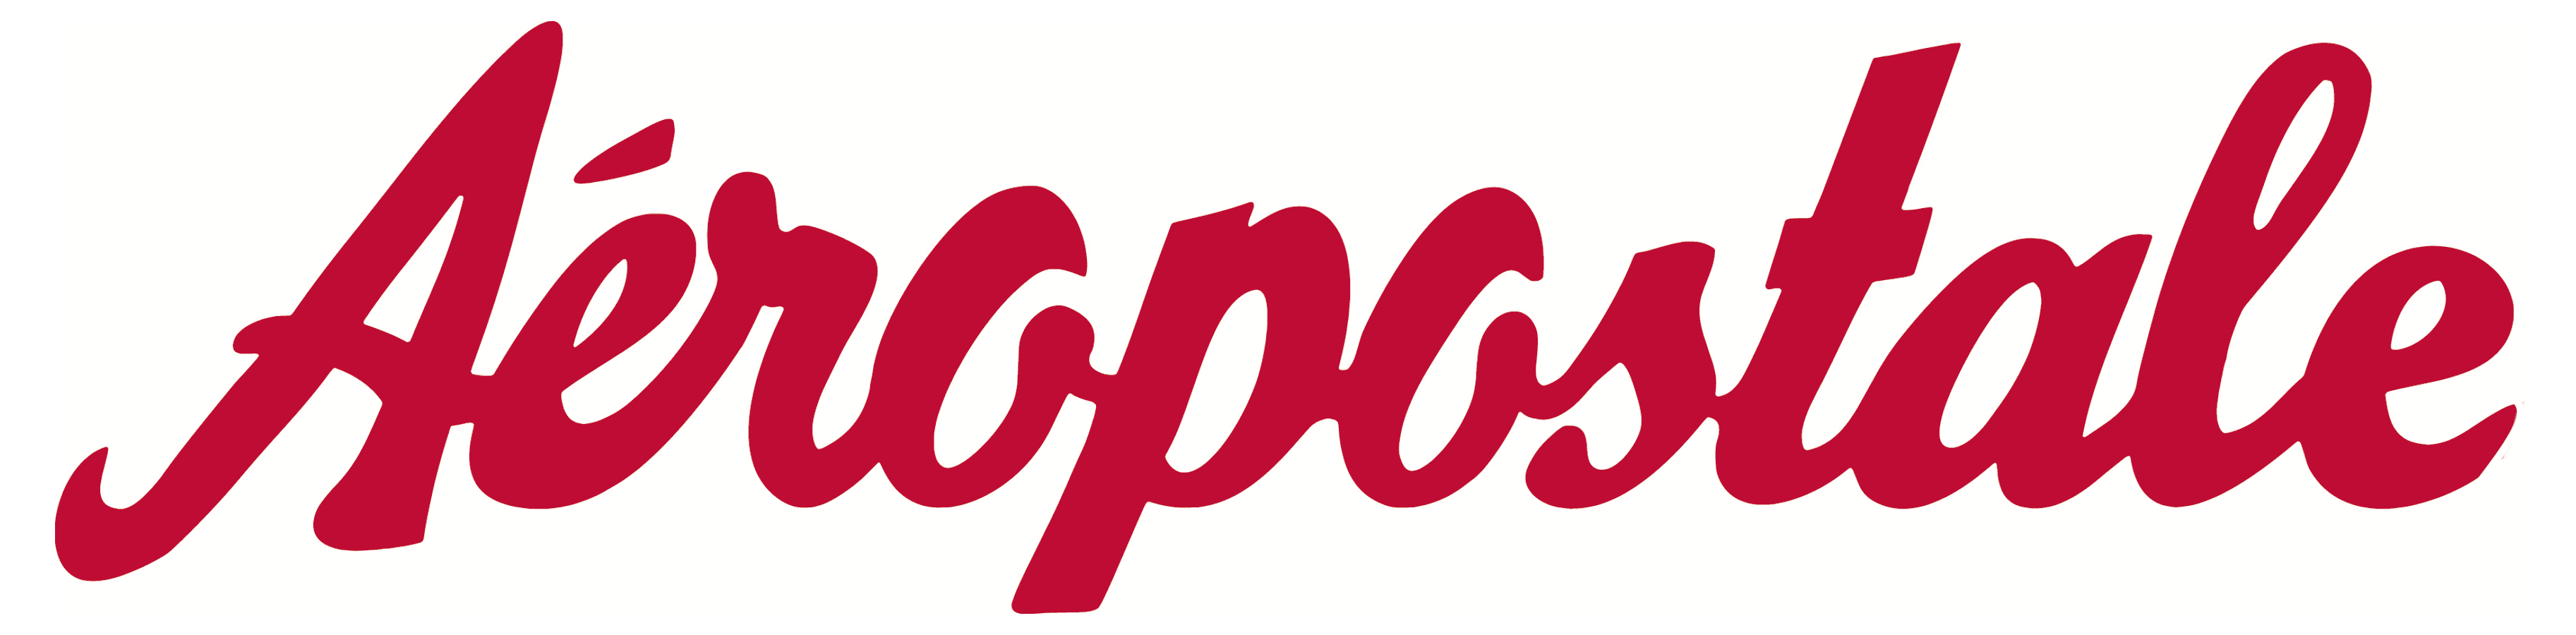 Areopostile Logo - Aeropostale – Logos Download